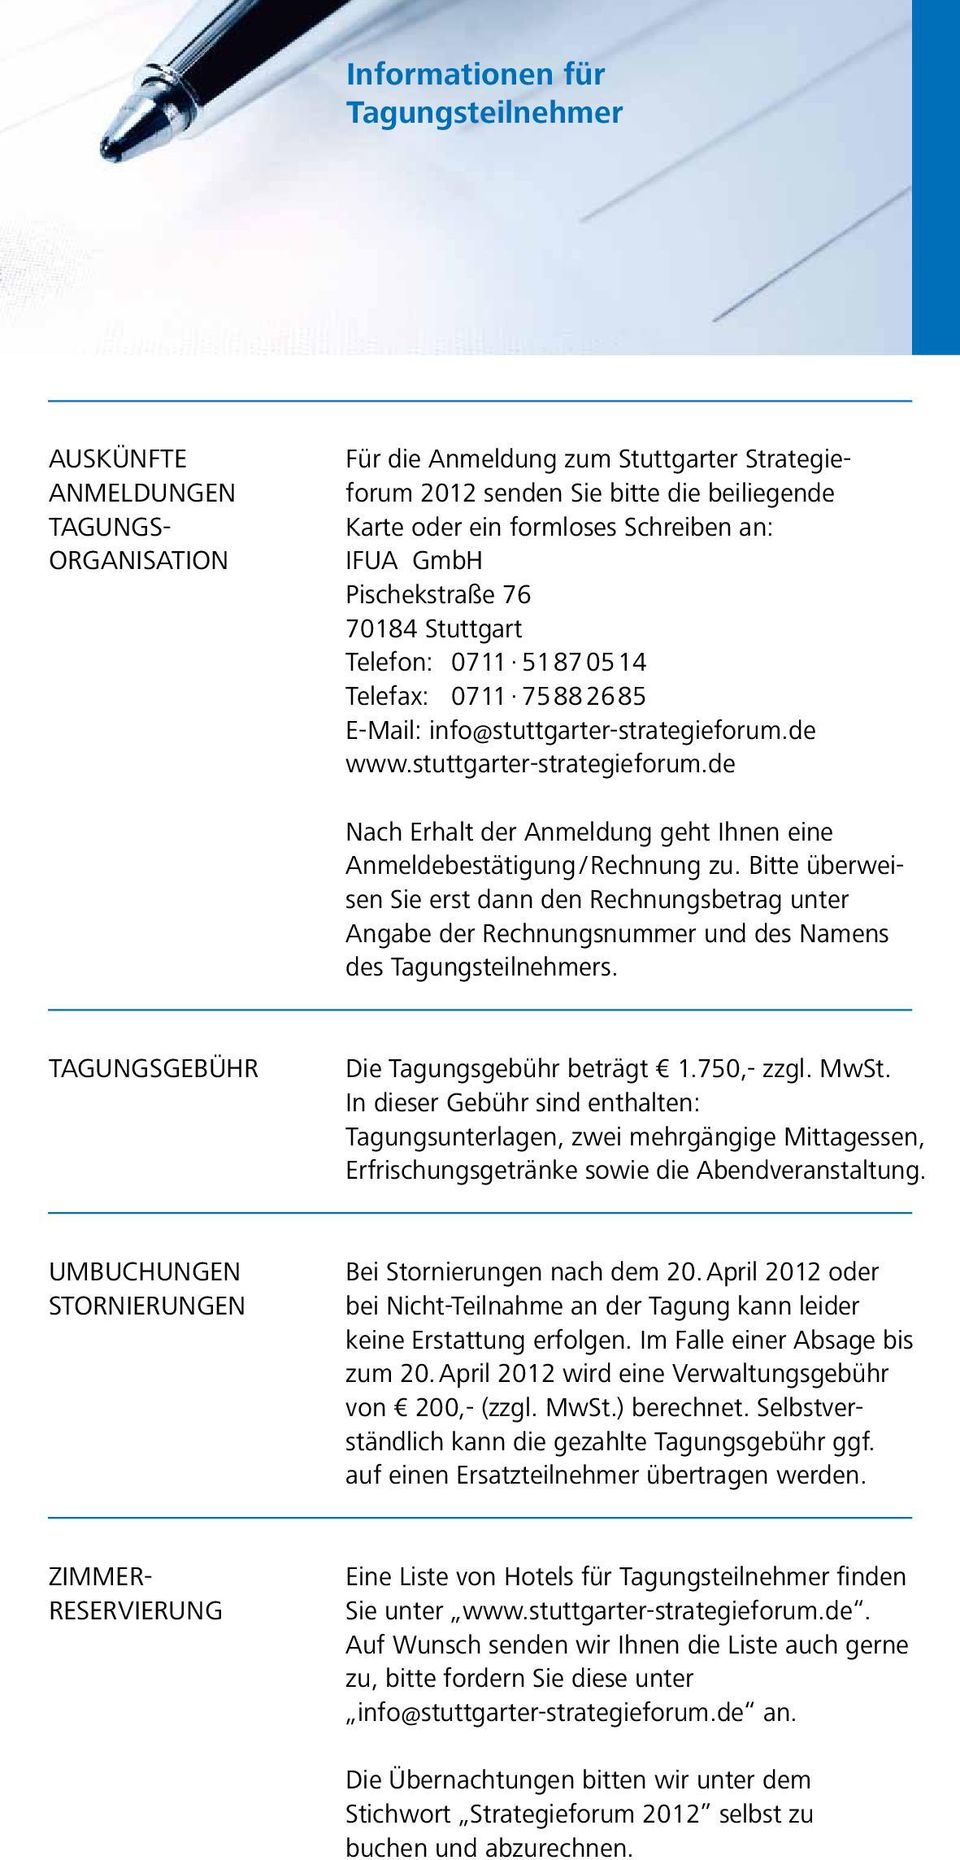 de www.stuttgarter-strategieforum.de Nach Erhalt der Anmeldung geht Ihnen eine An meldebestätigung / Rechnung zu.